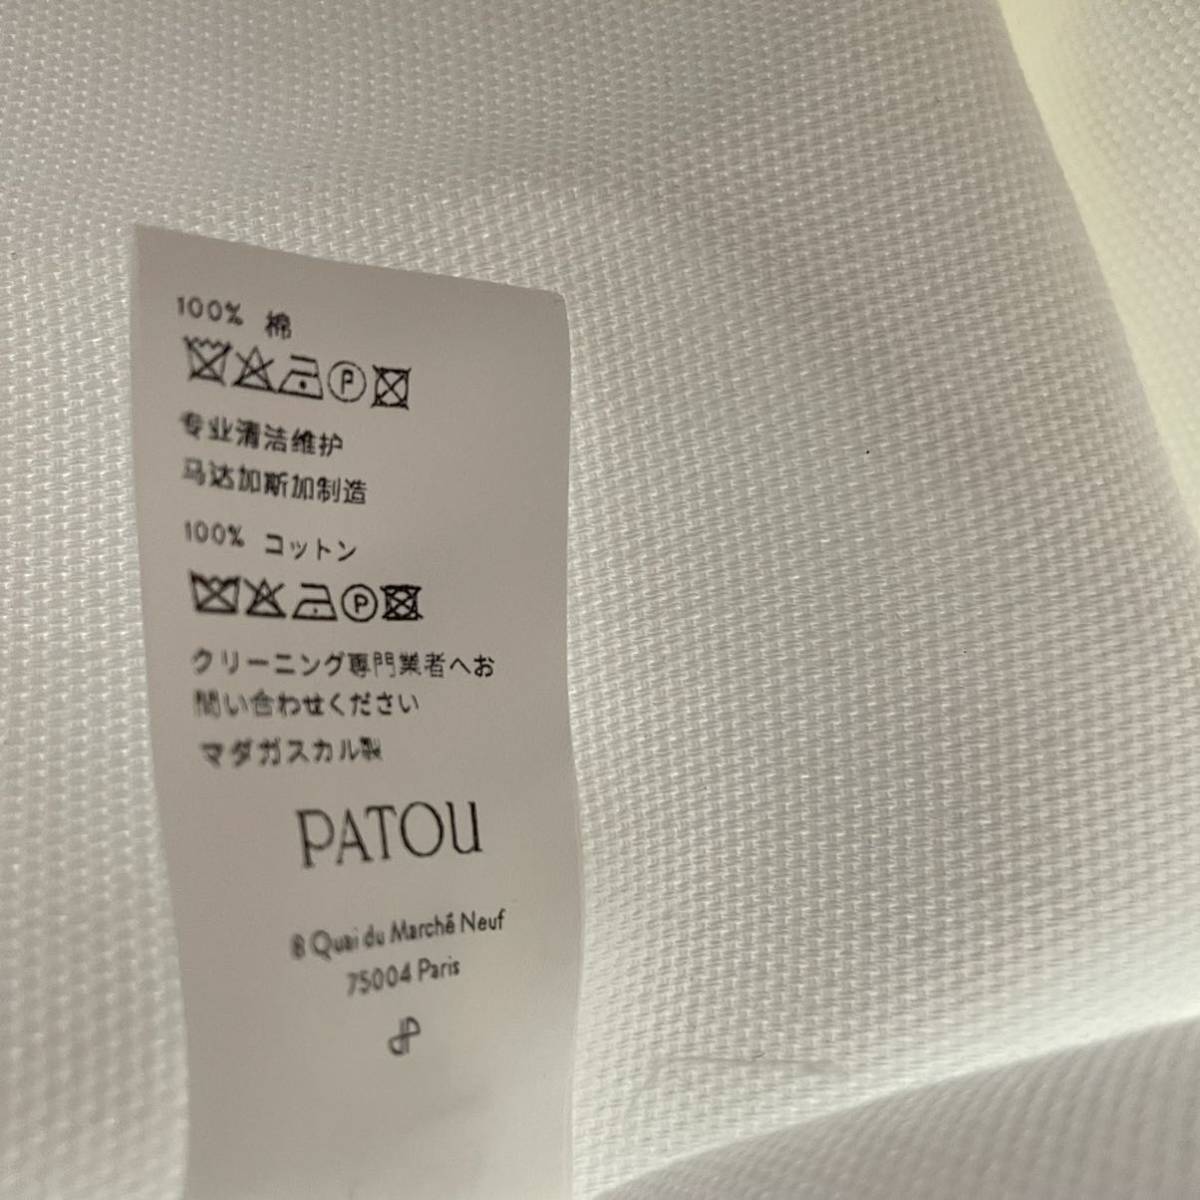 【新品】PATOU パトゥ ロゴ トートバッグ ショルダー ホワイト